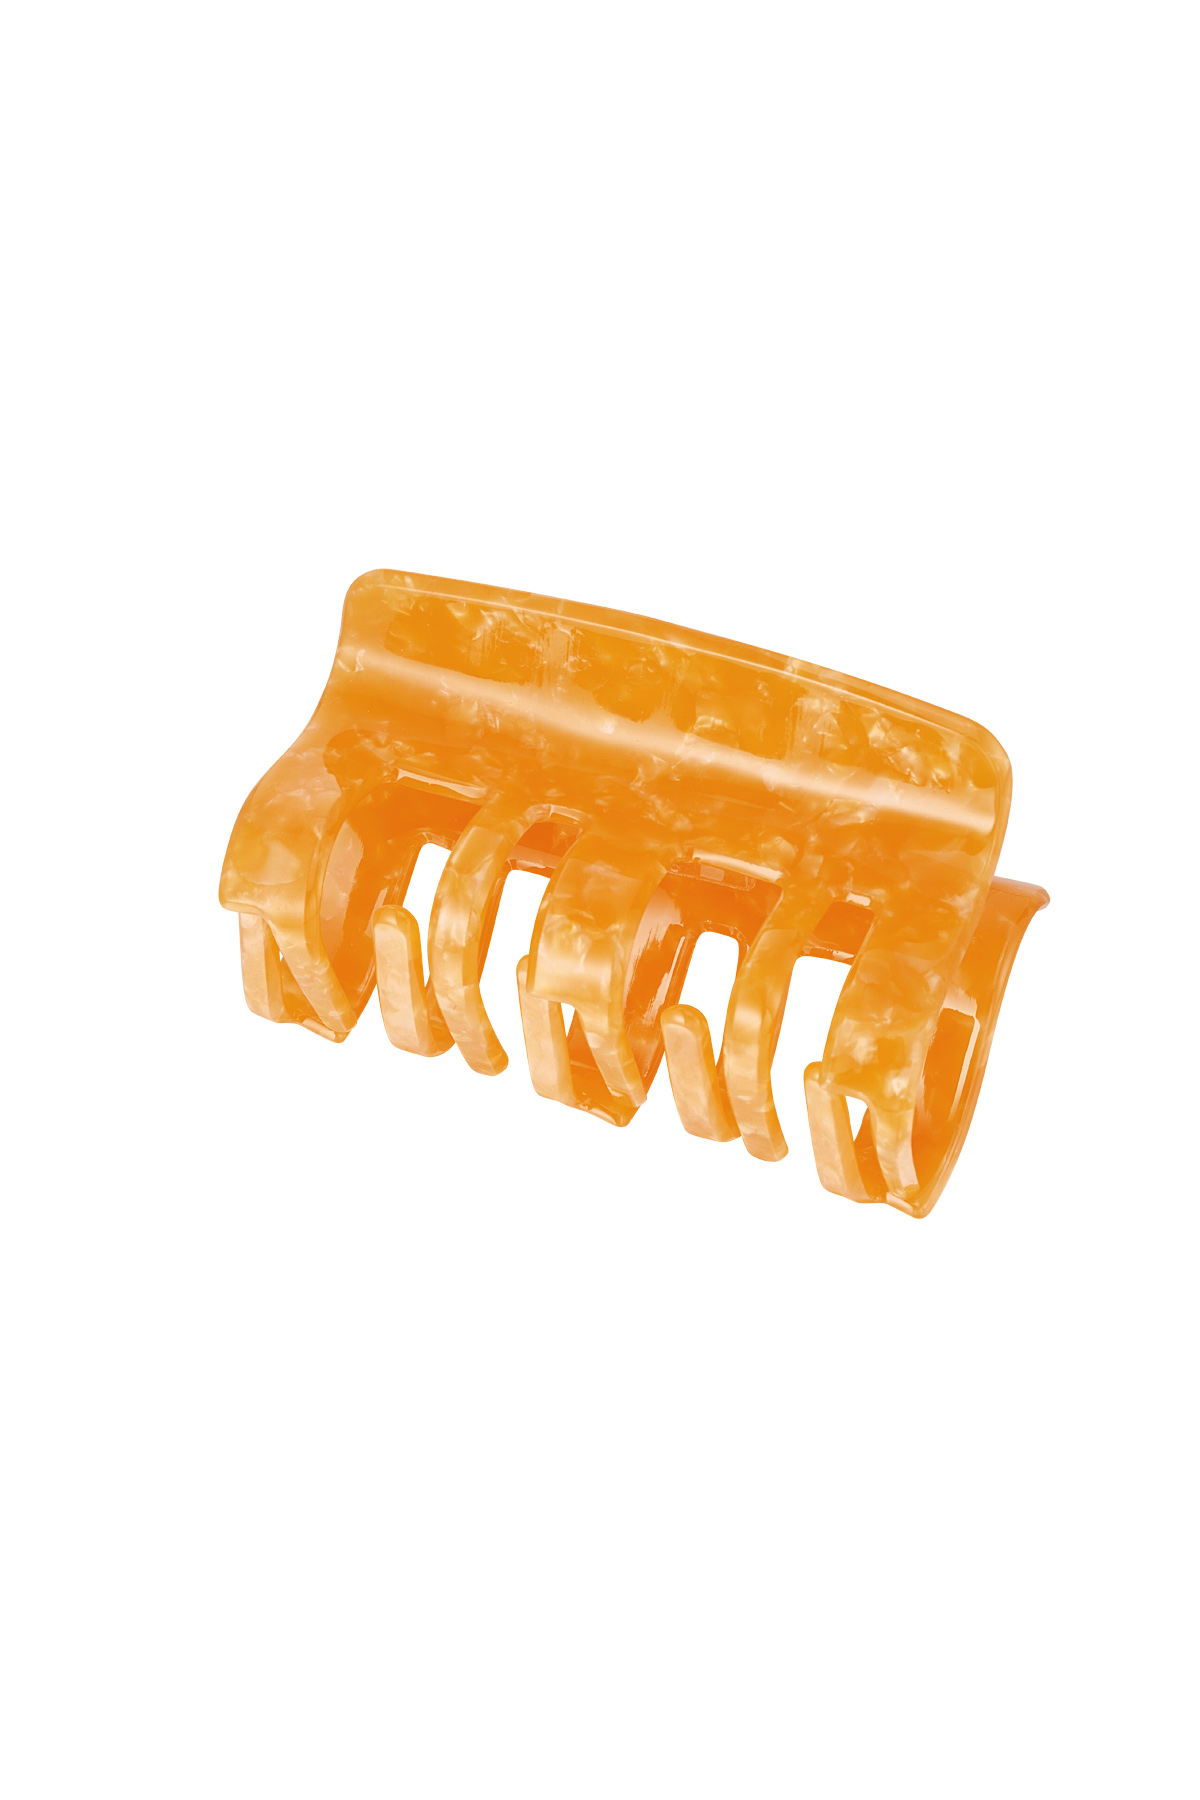 Haarspange schimmernder Druck - orangefarbenes Plattenmaterial h5 